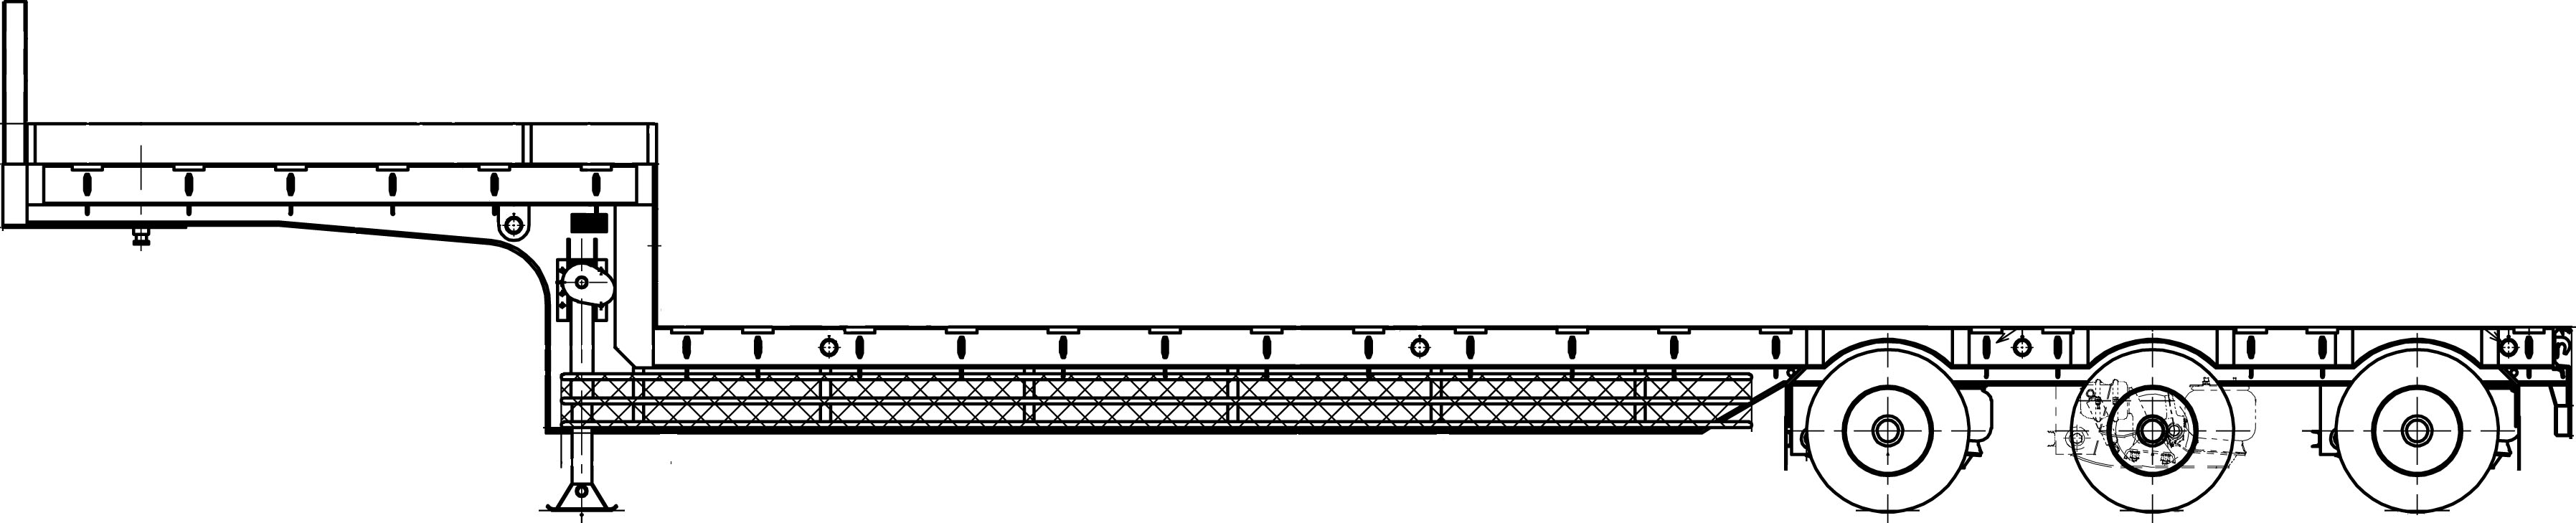 ボルボ中低６軸-台車-側面図-1